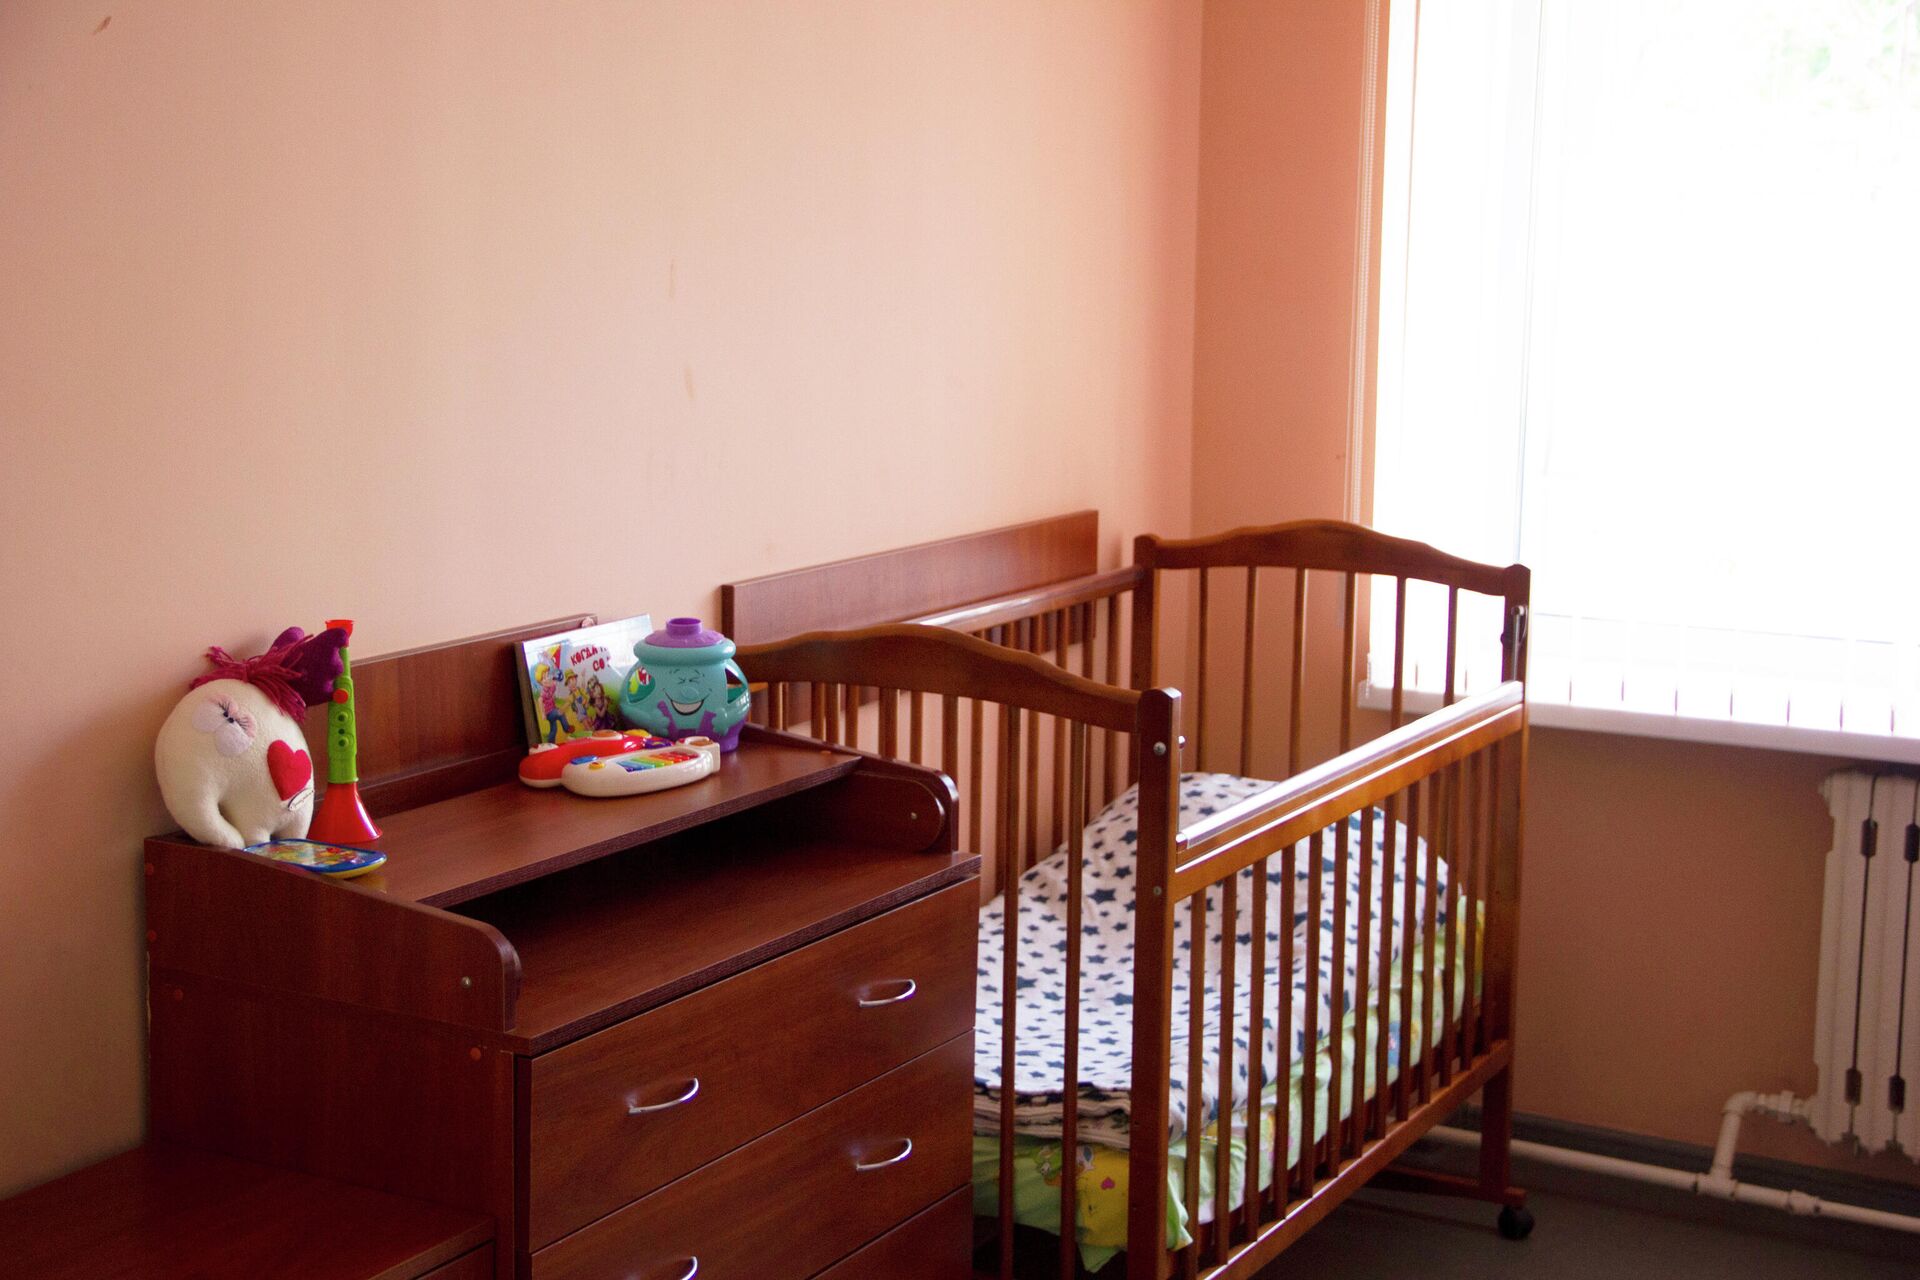 Так выглядит комната в общежитии для мам с детьми - Sputnik Беларусь, 1920, 06.08.2021